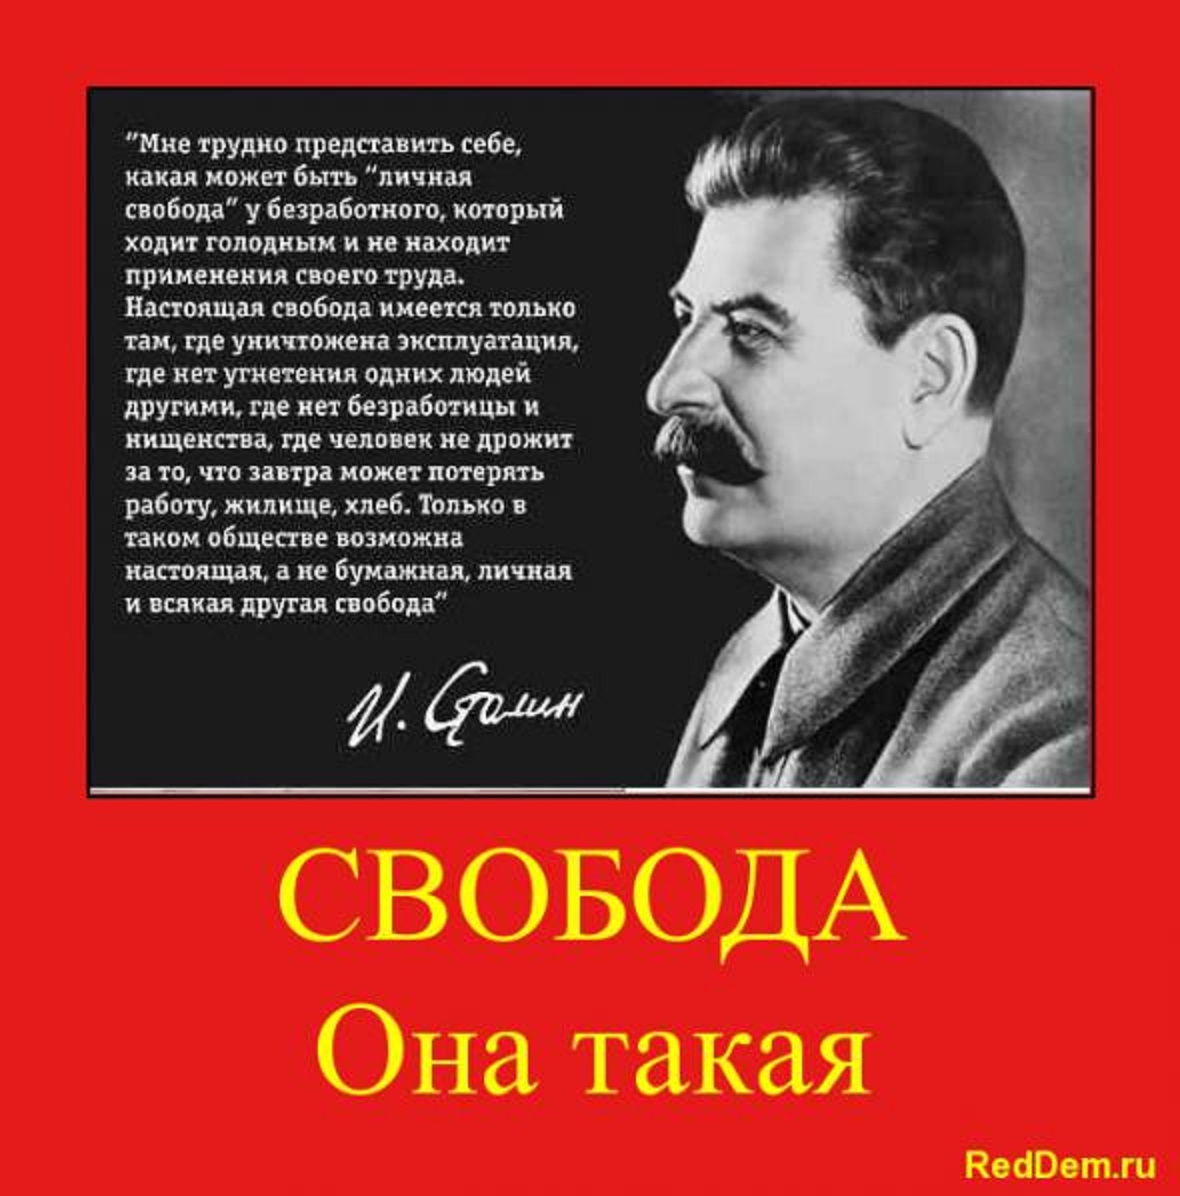 Свобода слова и выражения. Иосиф Сталин. Высказывания Сталина. Фразы Сталина. Сталин о свободе человека.